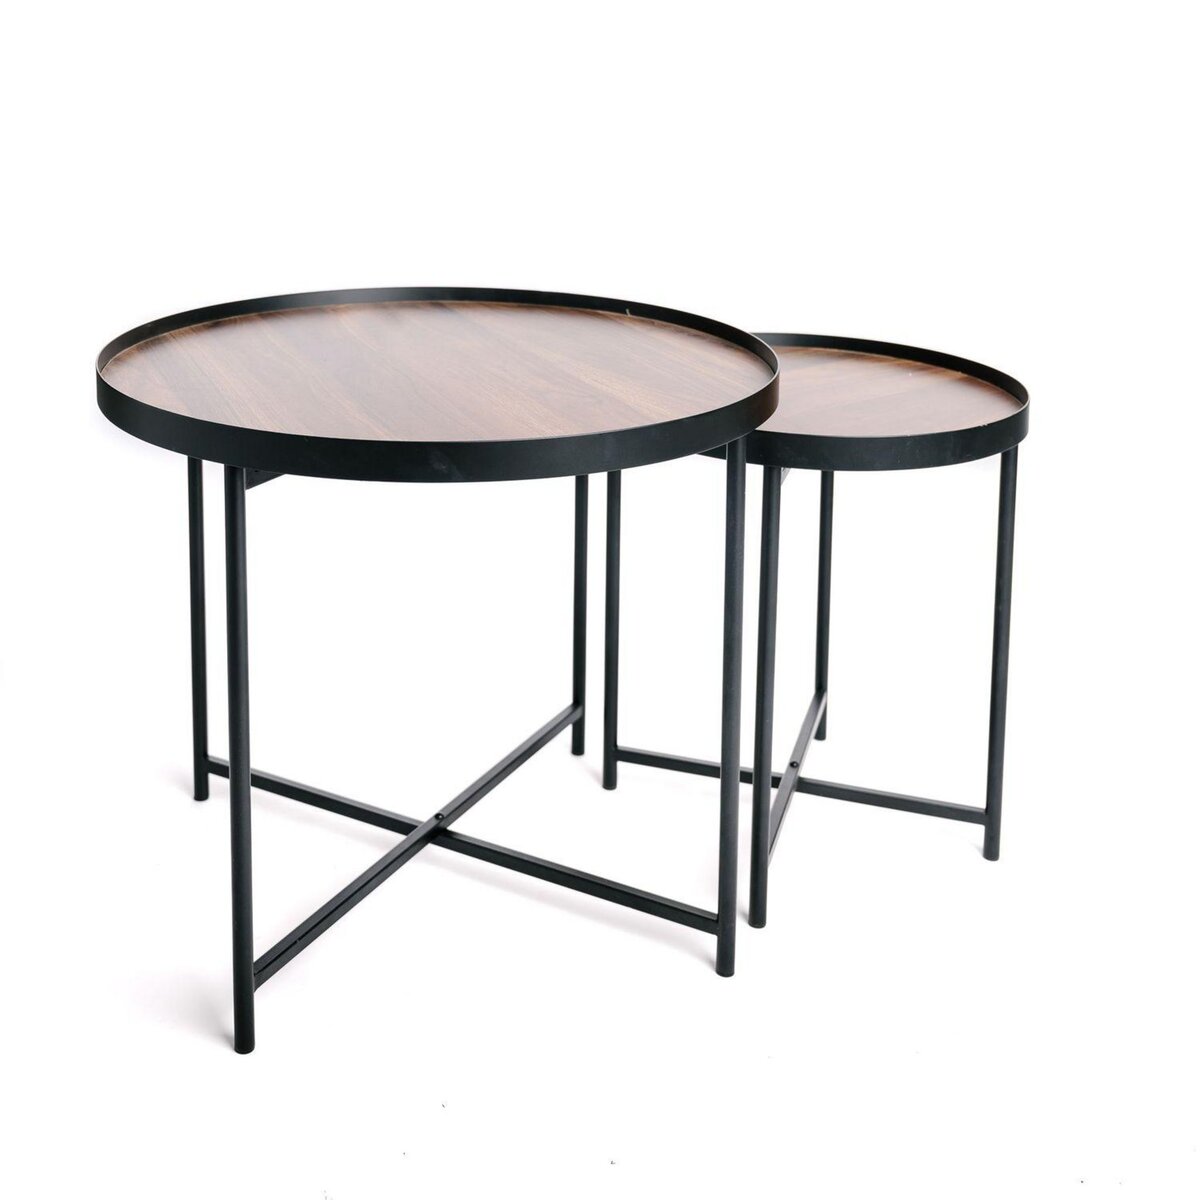  Lot de 2 tables d'appoint ou tables gigogne ronde en MDF et métal - Marron et noir